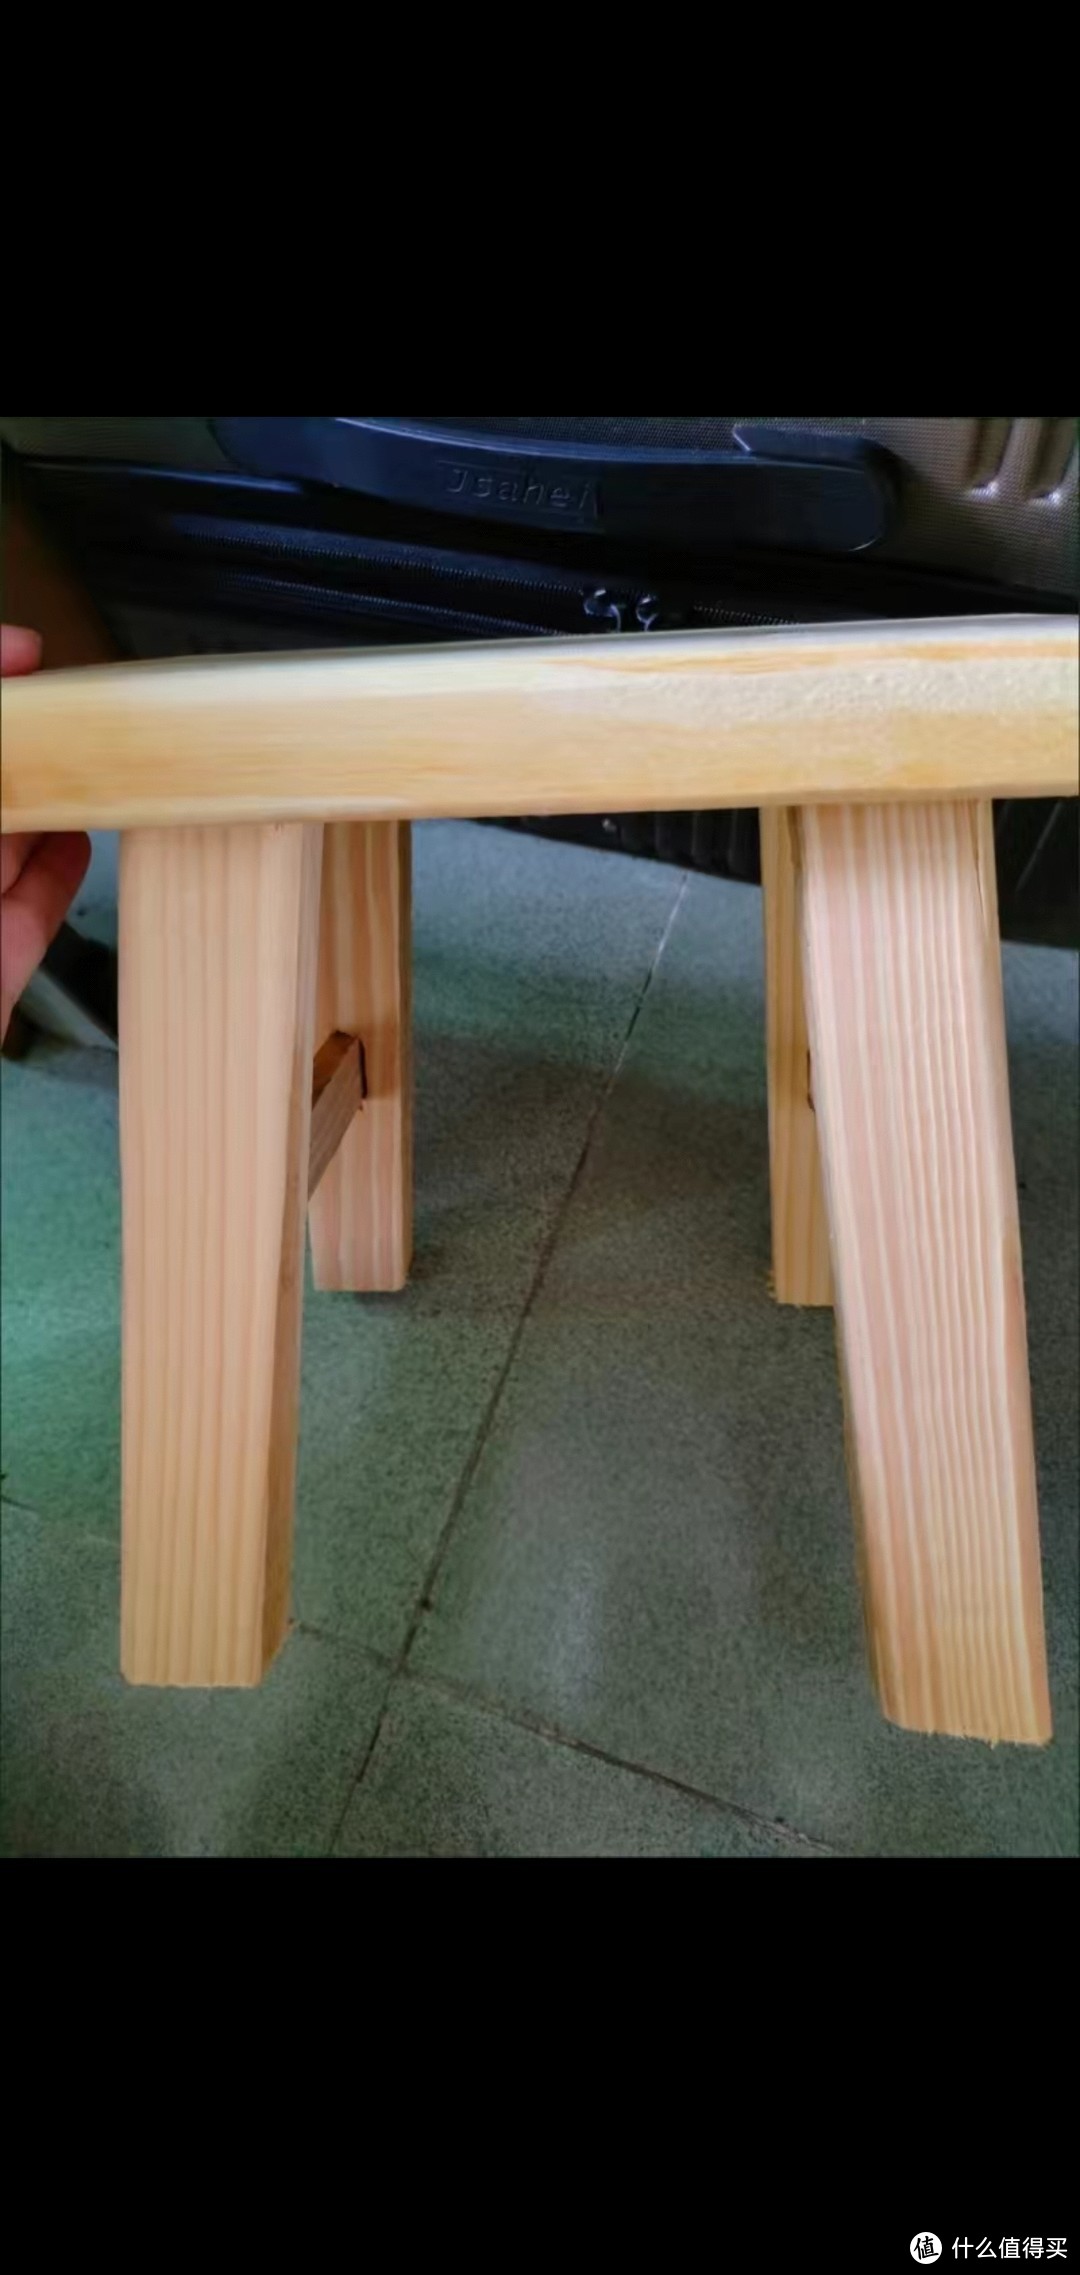 纯手工打造的小凳子：长方形凳面，棱角分明，木纹清晰，榫卯结构